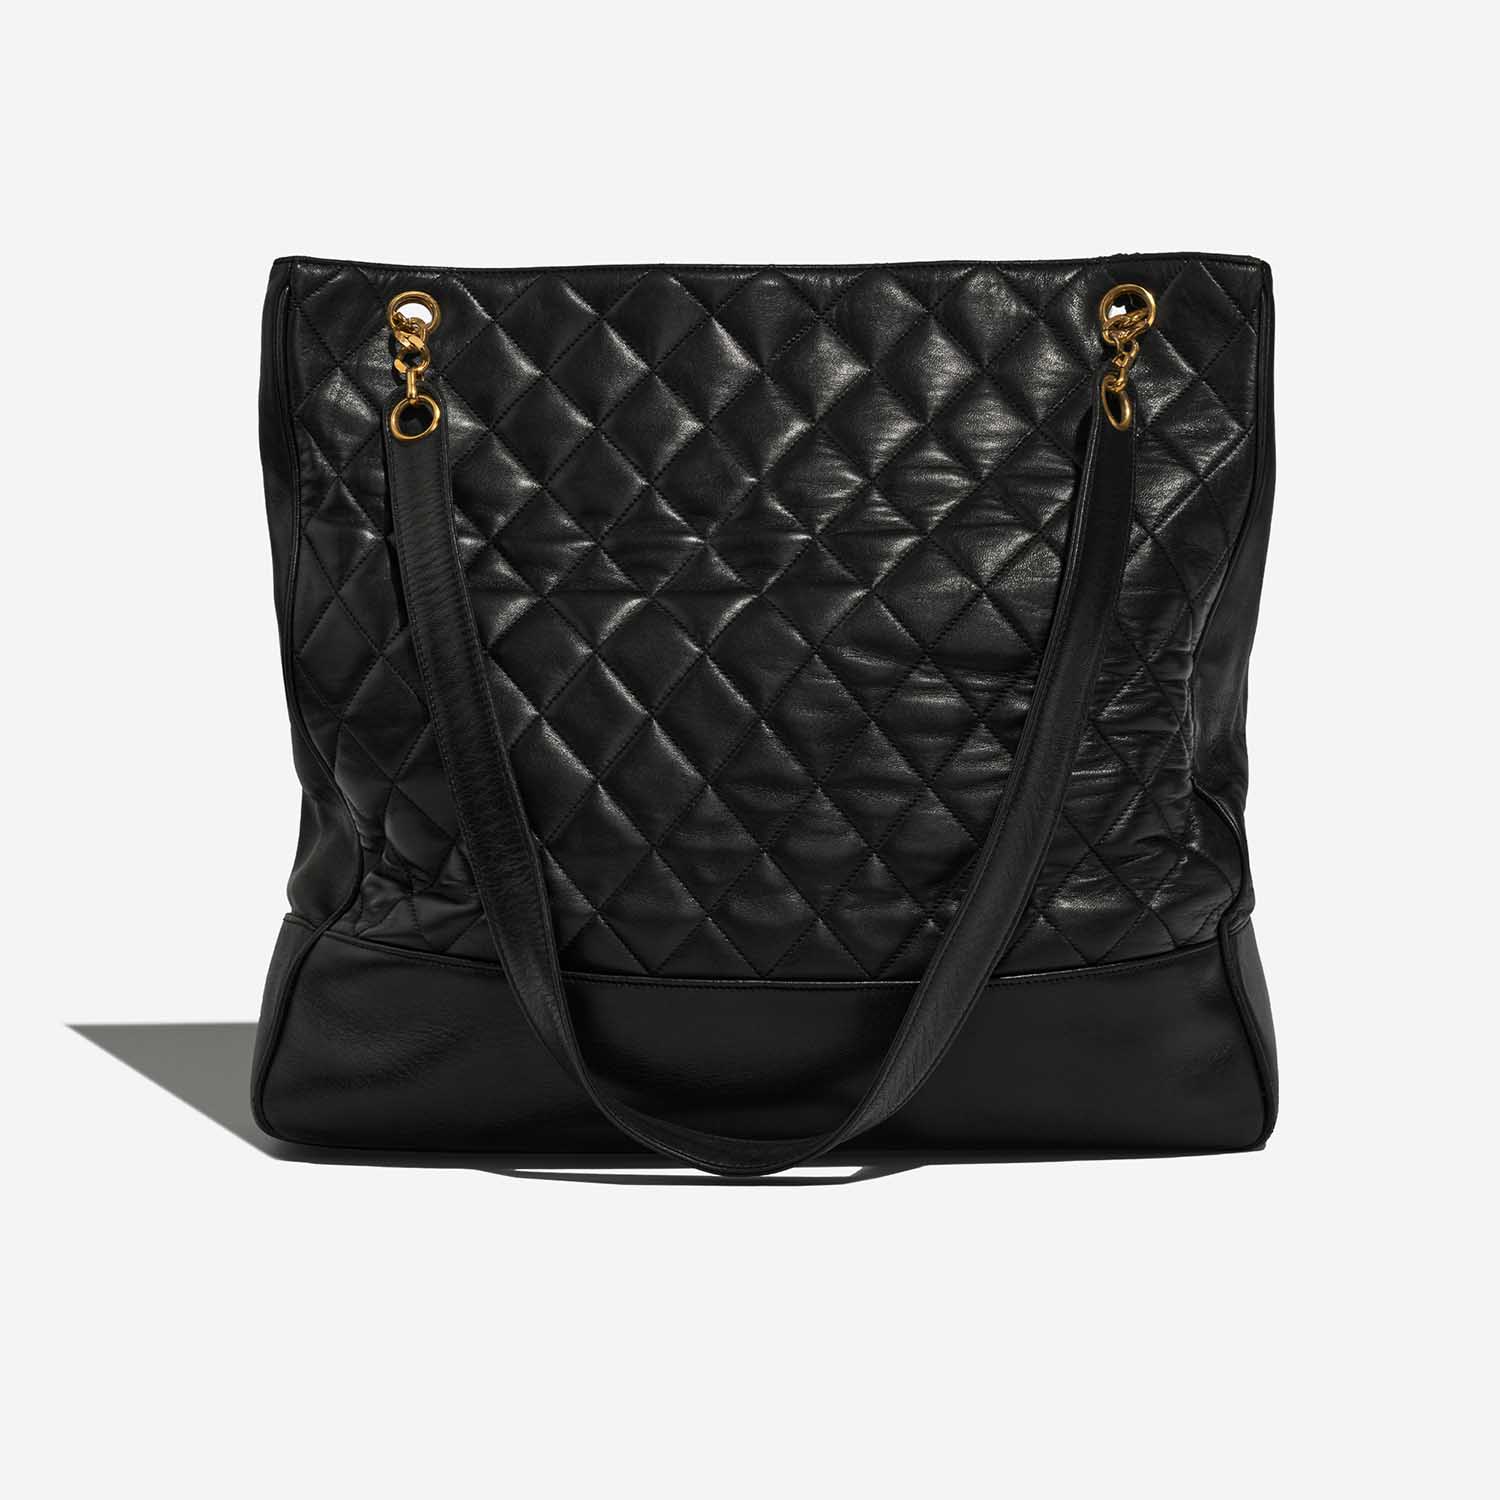 Chanel ShoppingTote Black Back | Verkaufen Sie Ihre Designertasche auf Saclab.com